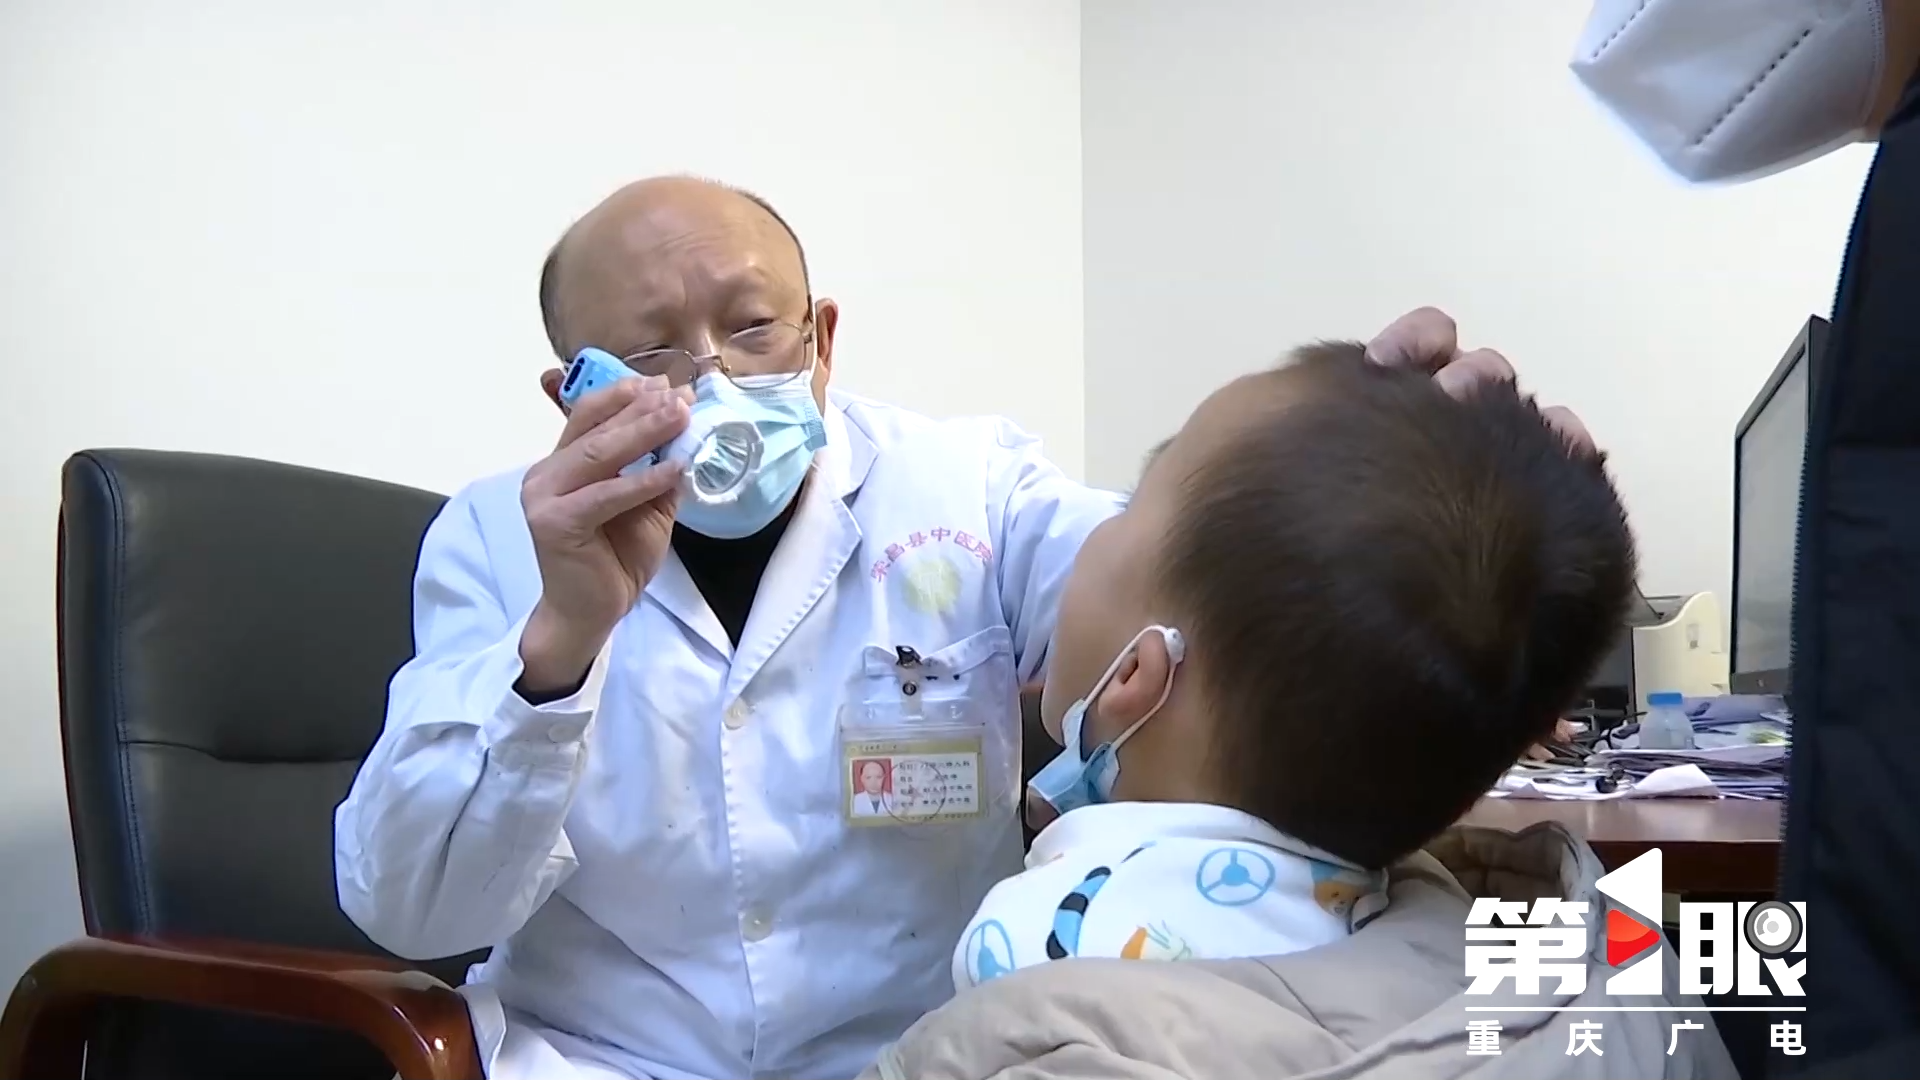 方便就近就诊！重庆共有1000余家医疗机构提供儿童诊疗4